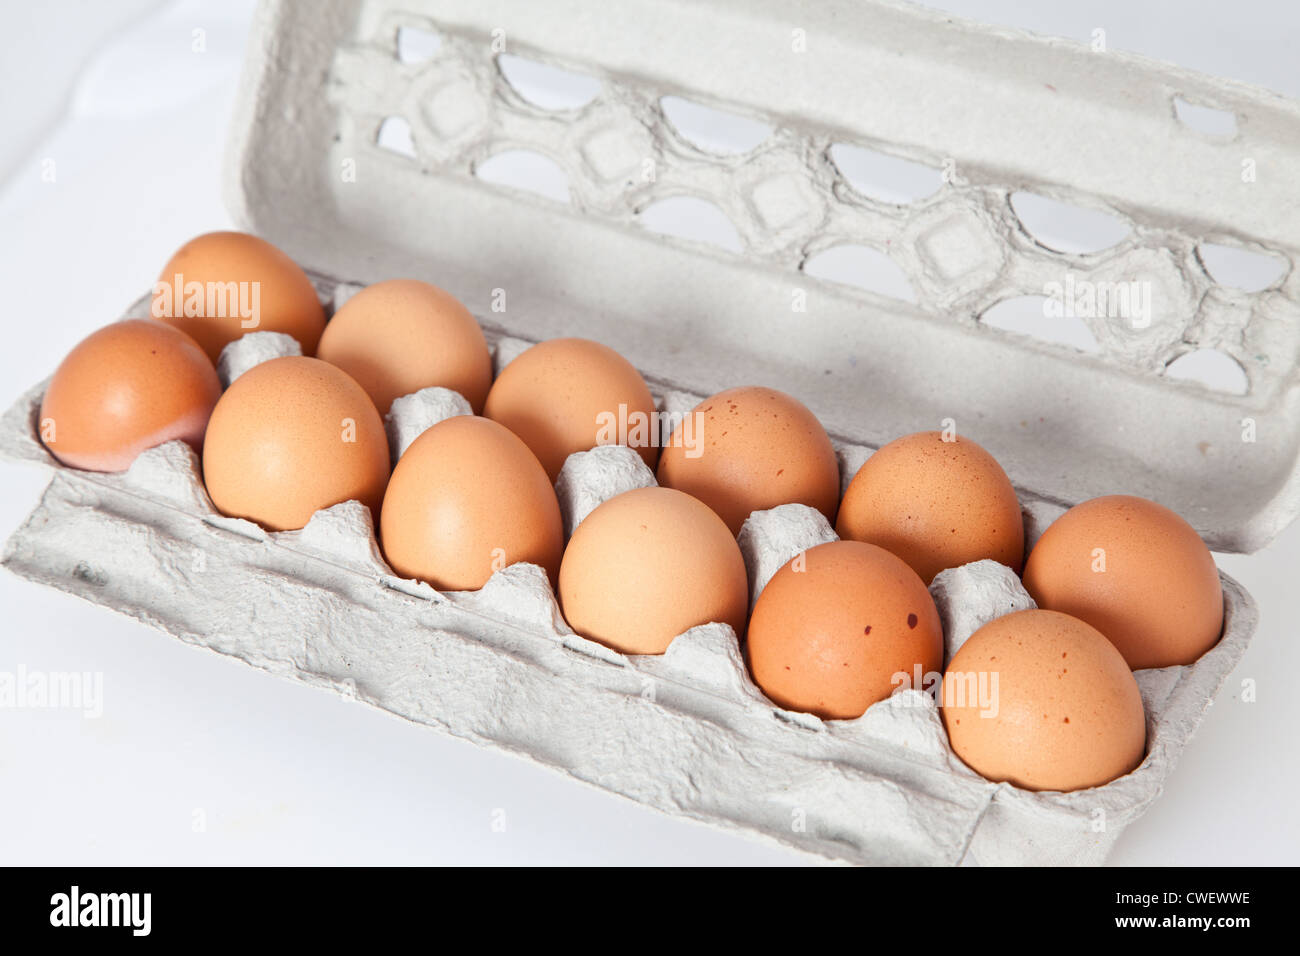 A dozen eggs isolated on white. Stock Photo